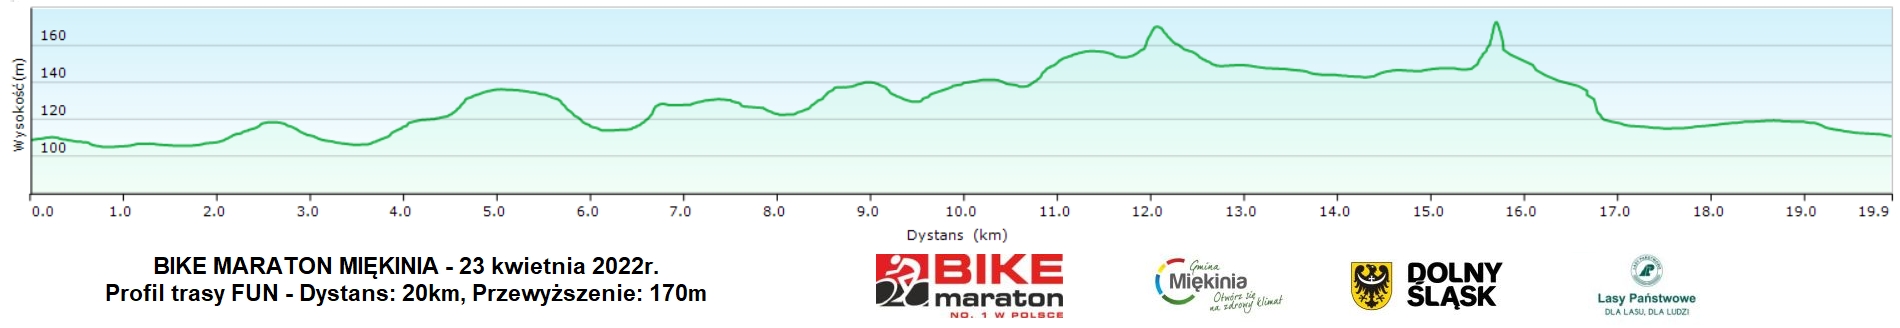 bike-maraton-2022-miekinia-profil-trasy-fun